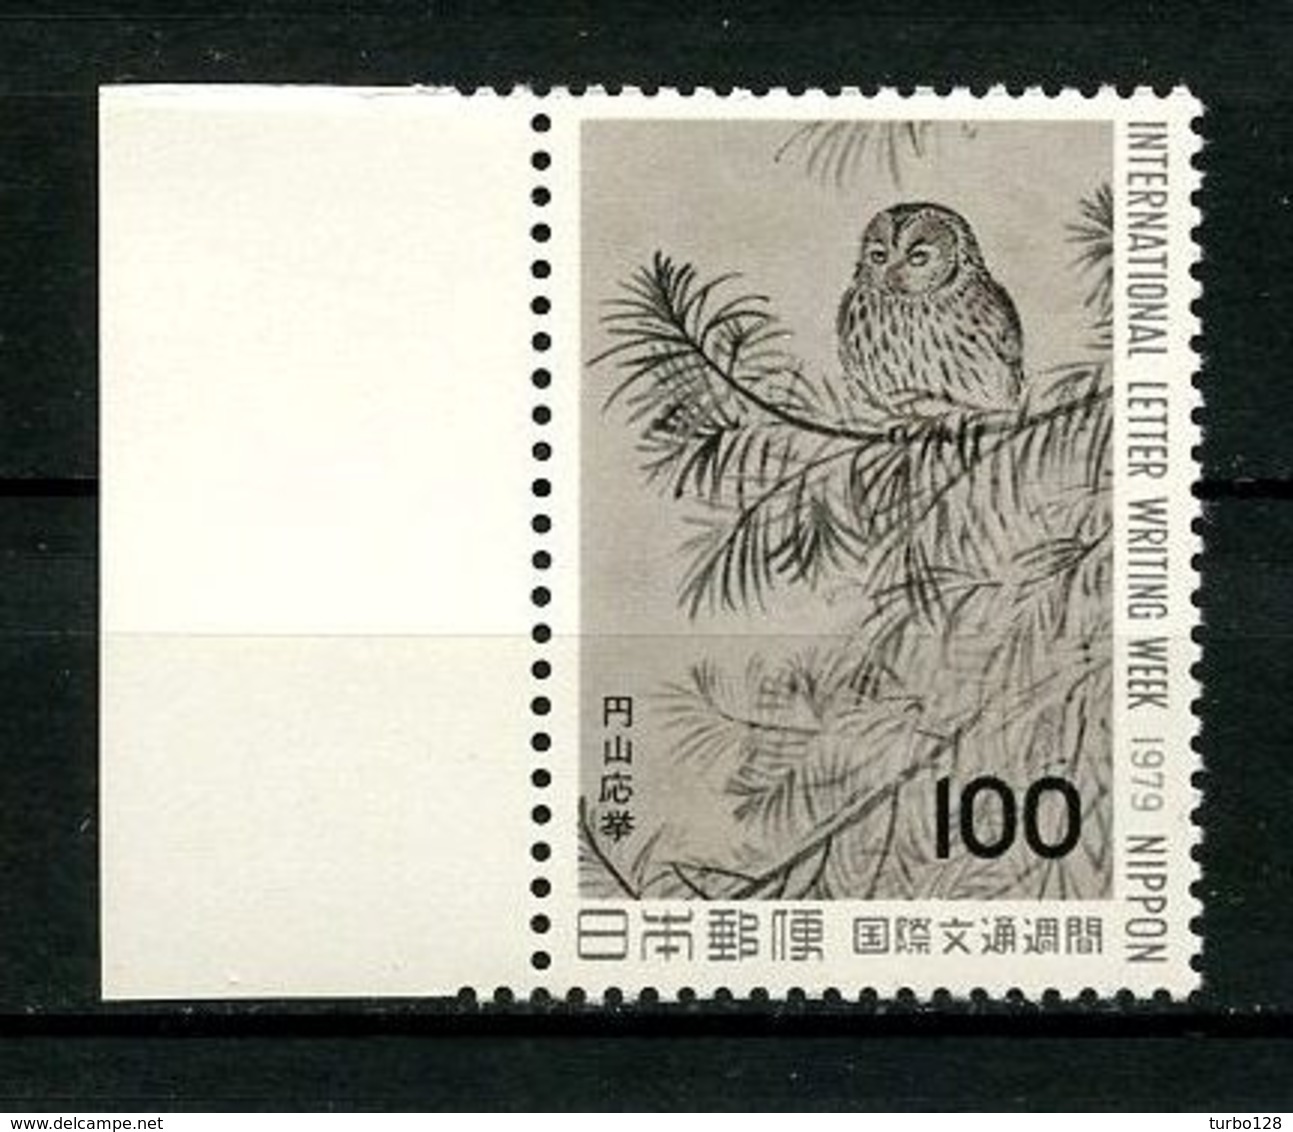 JAPON 1979  N° 1307 ** Neuf MNH Superbe Cote 3 €  Faune Oiseaux Birds Chouette Fauna Lettre écrite Writer Animaux - Neufs